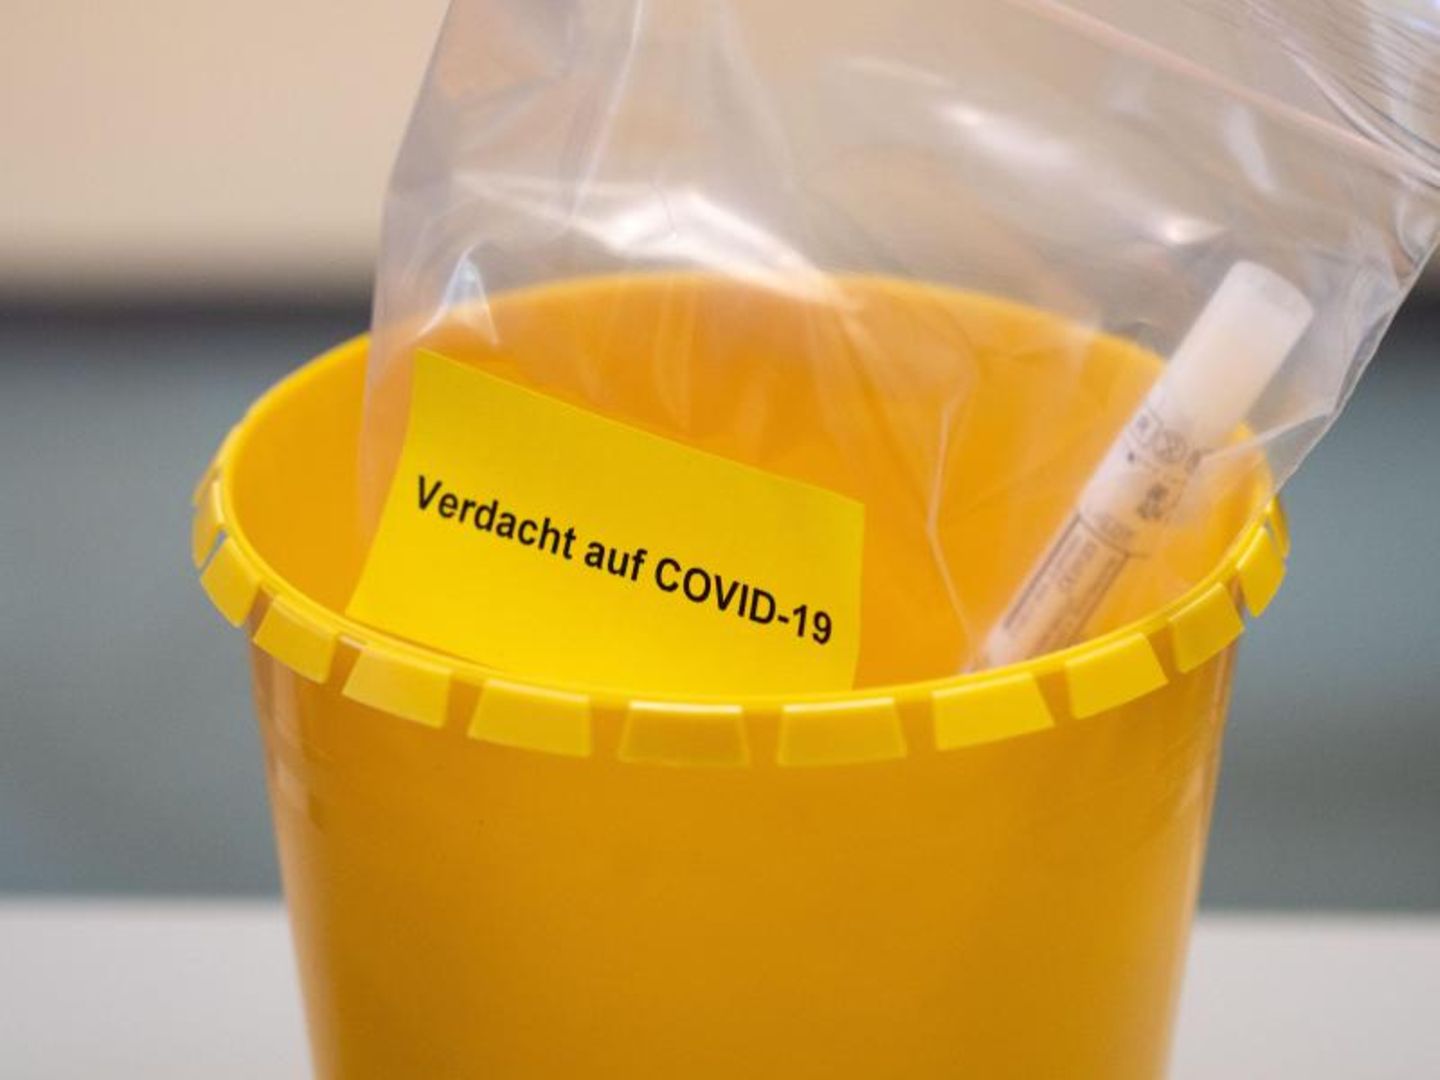 Ein Teströhrchen liegt in einer Tüte mit der Aufschrift "Verdacht auf COVID-19".